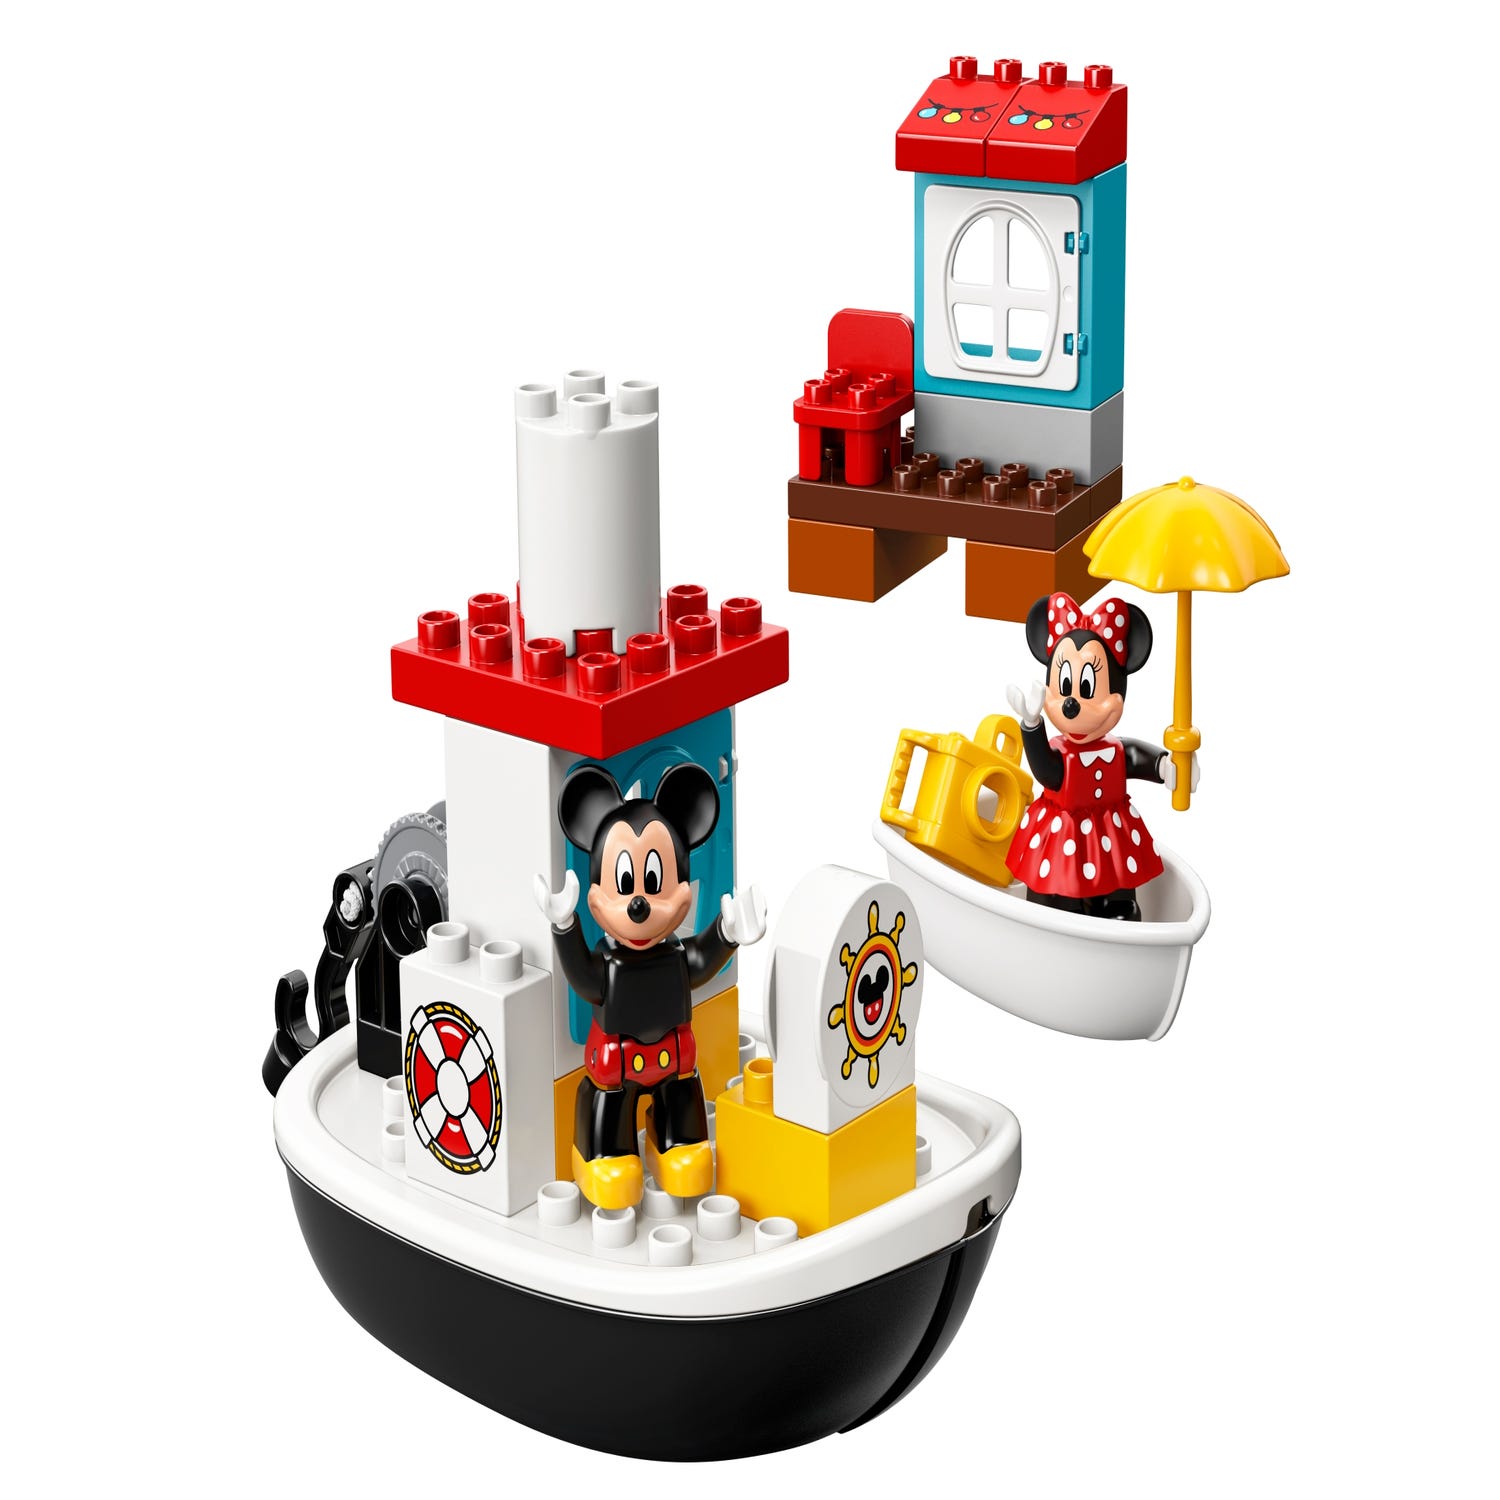 Veraangenamen meester Primitief Mickey's Boat 10881 | Disney™ | Buy online at the Official LEGO® Shop US